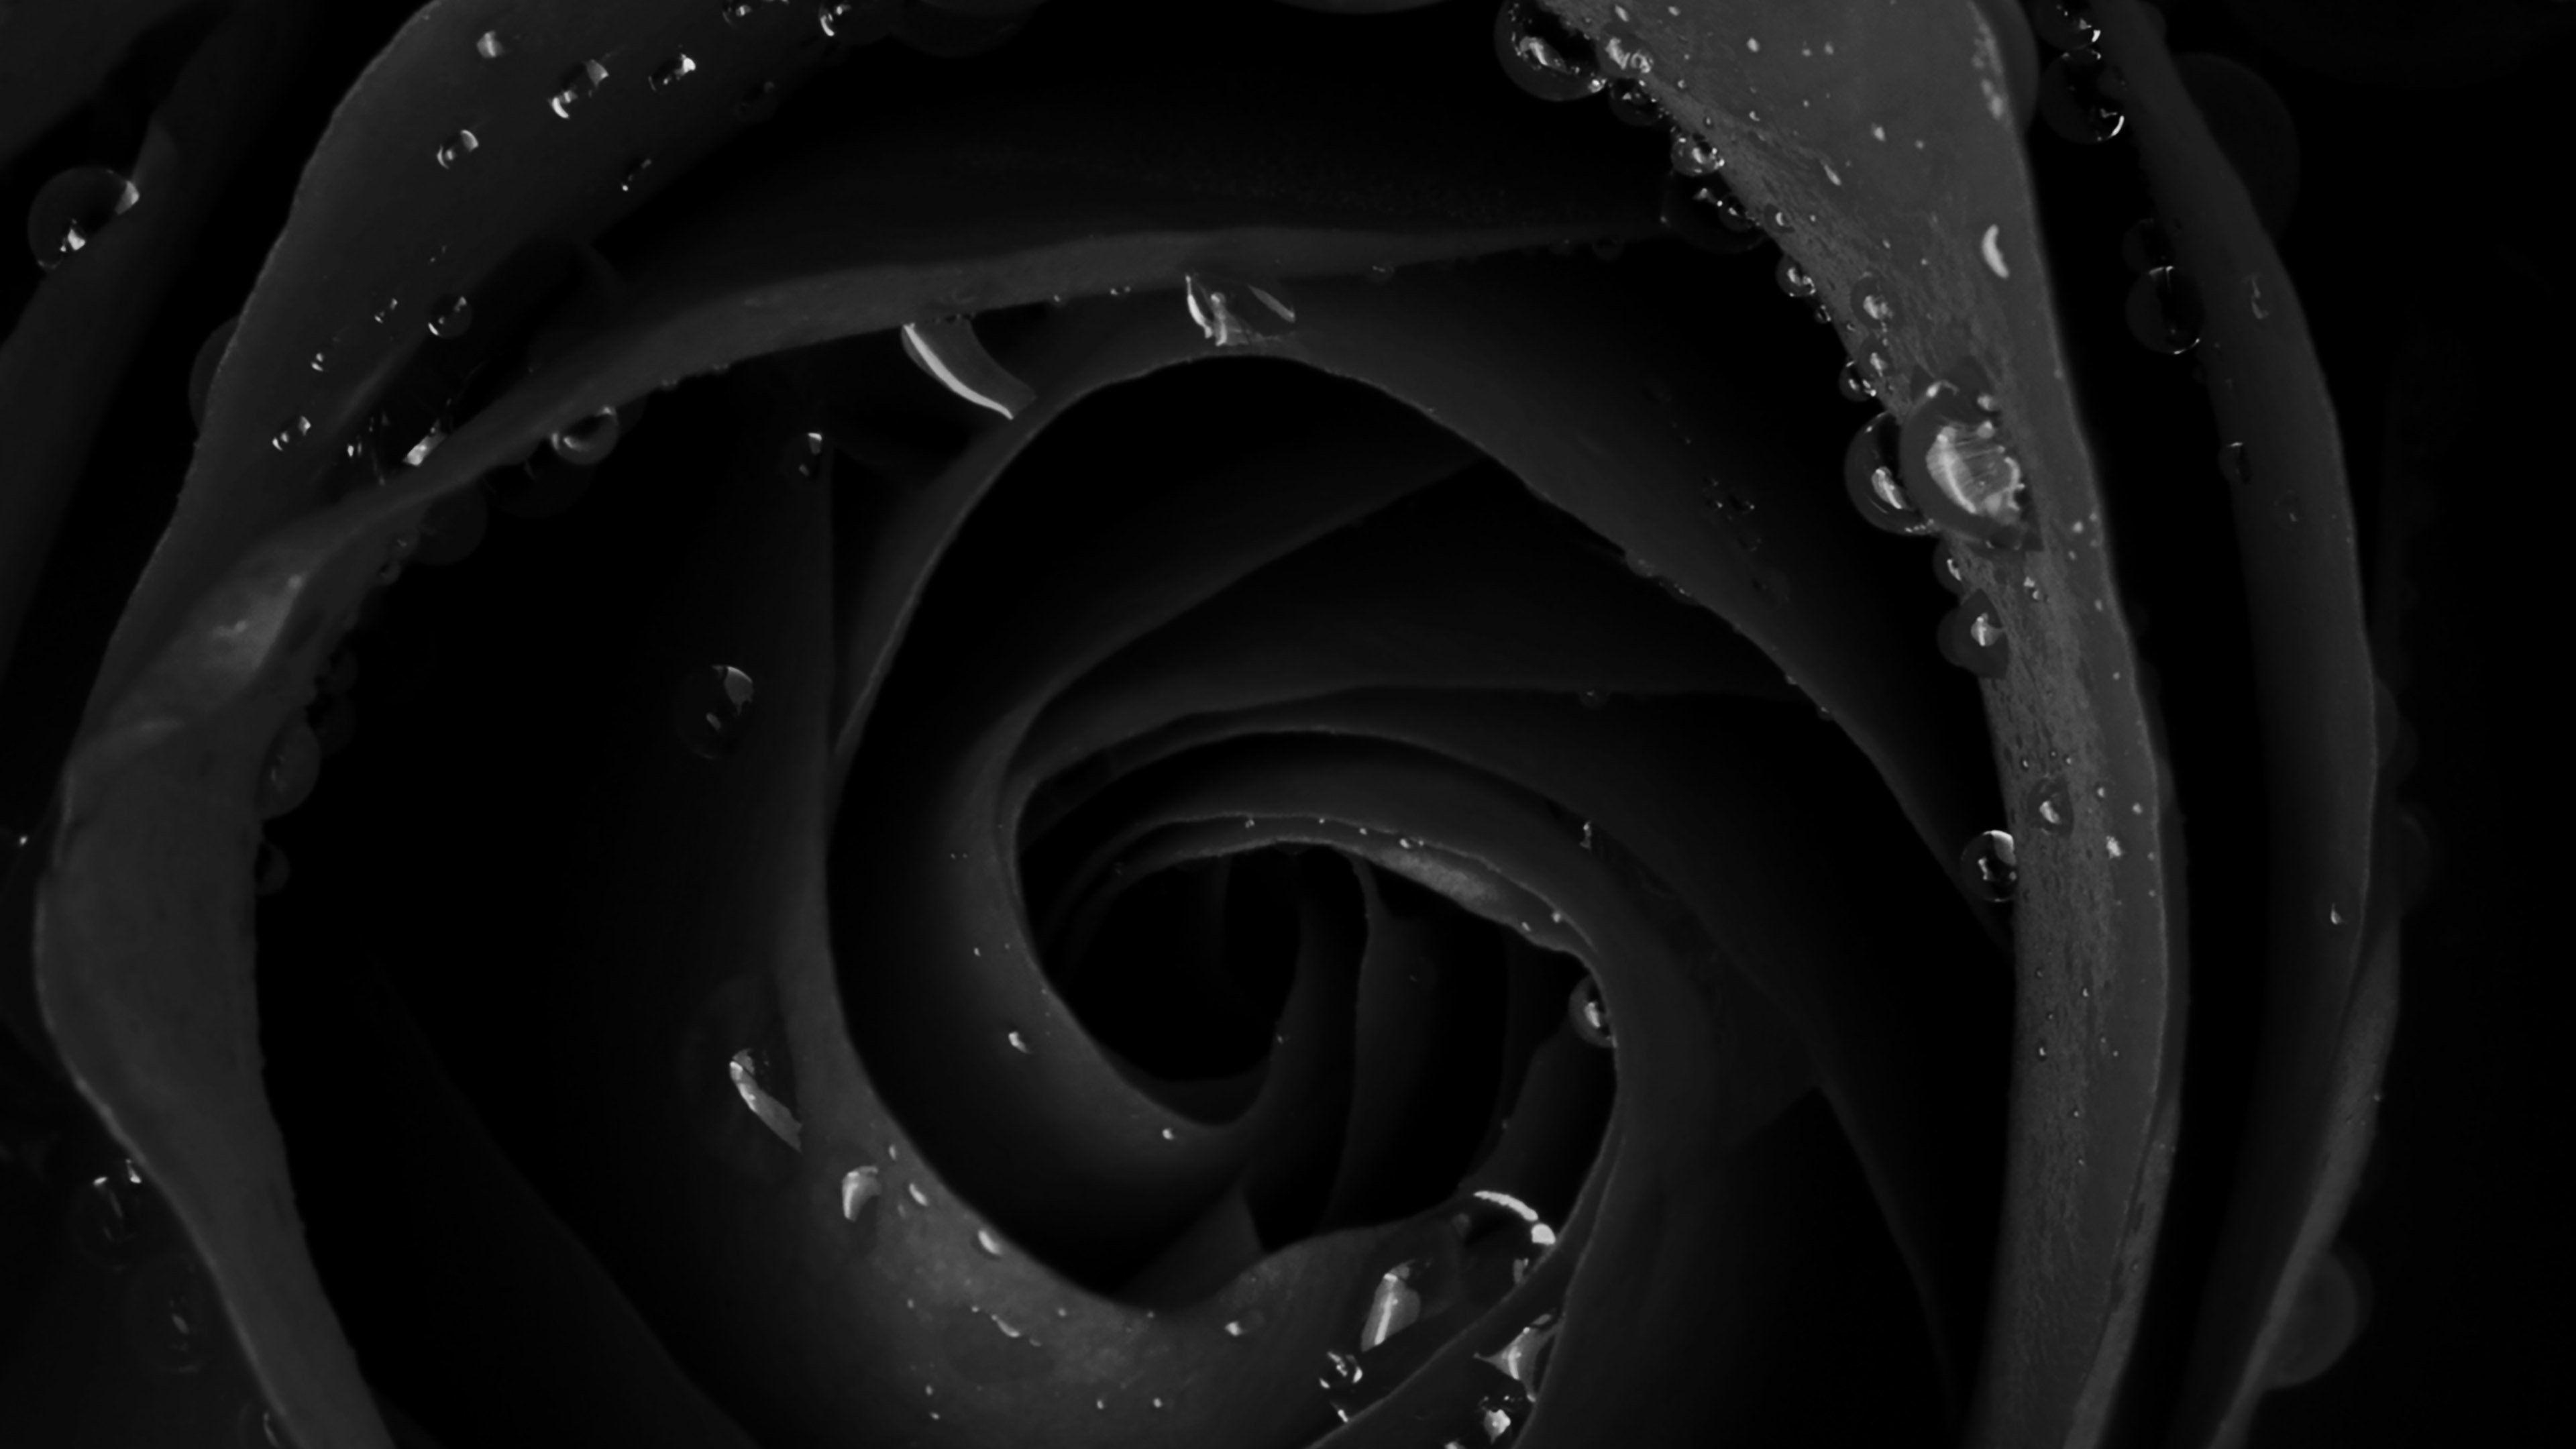 Black Rose 4K Wallpapers - Top Free Black Rose 4K Backgrounds